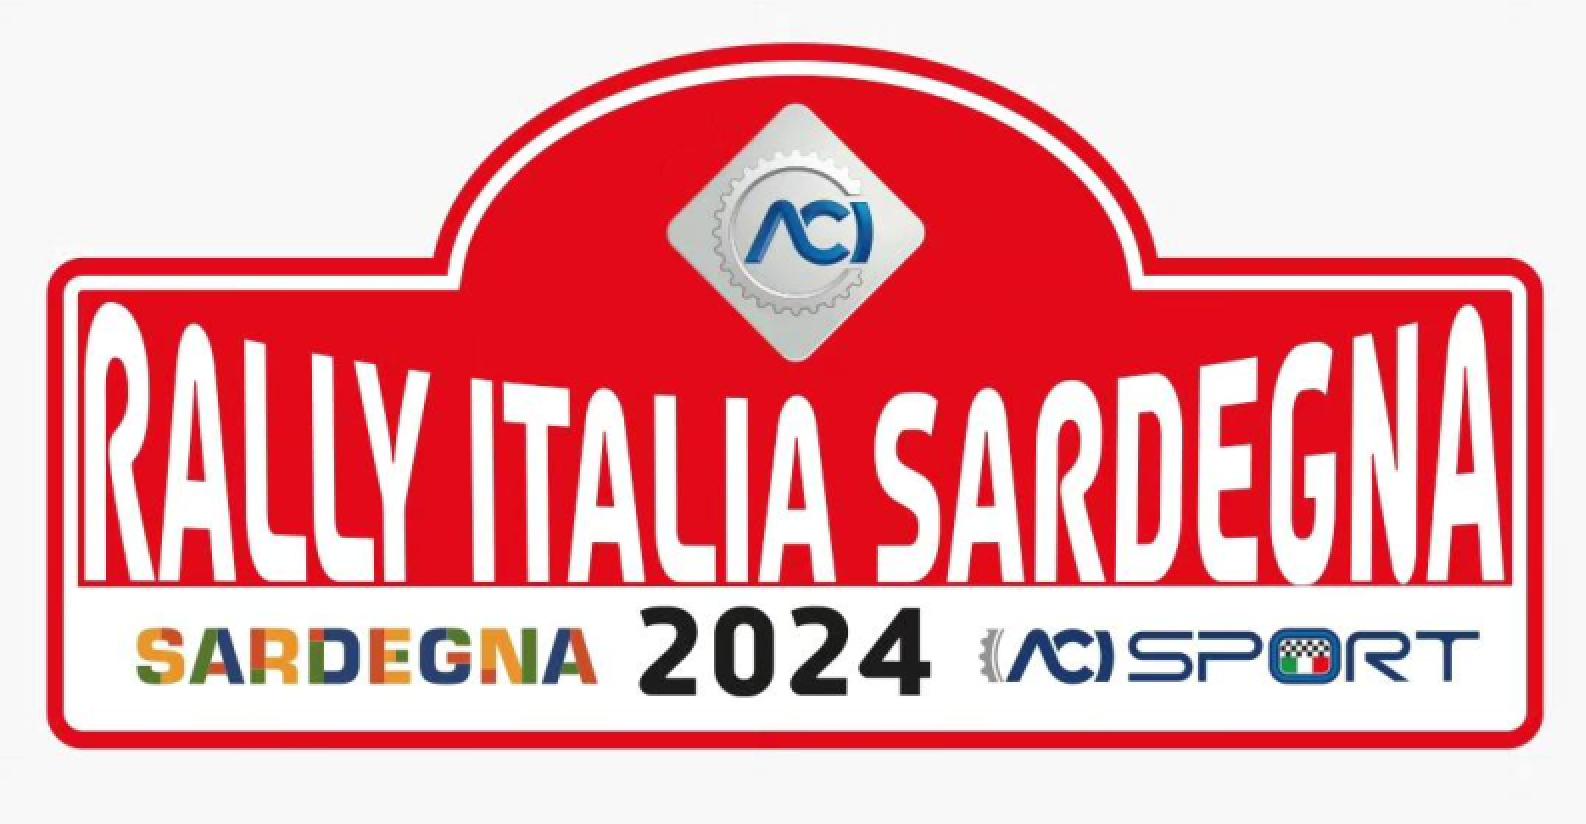 rally_italia_sardegna_2024